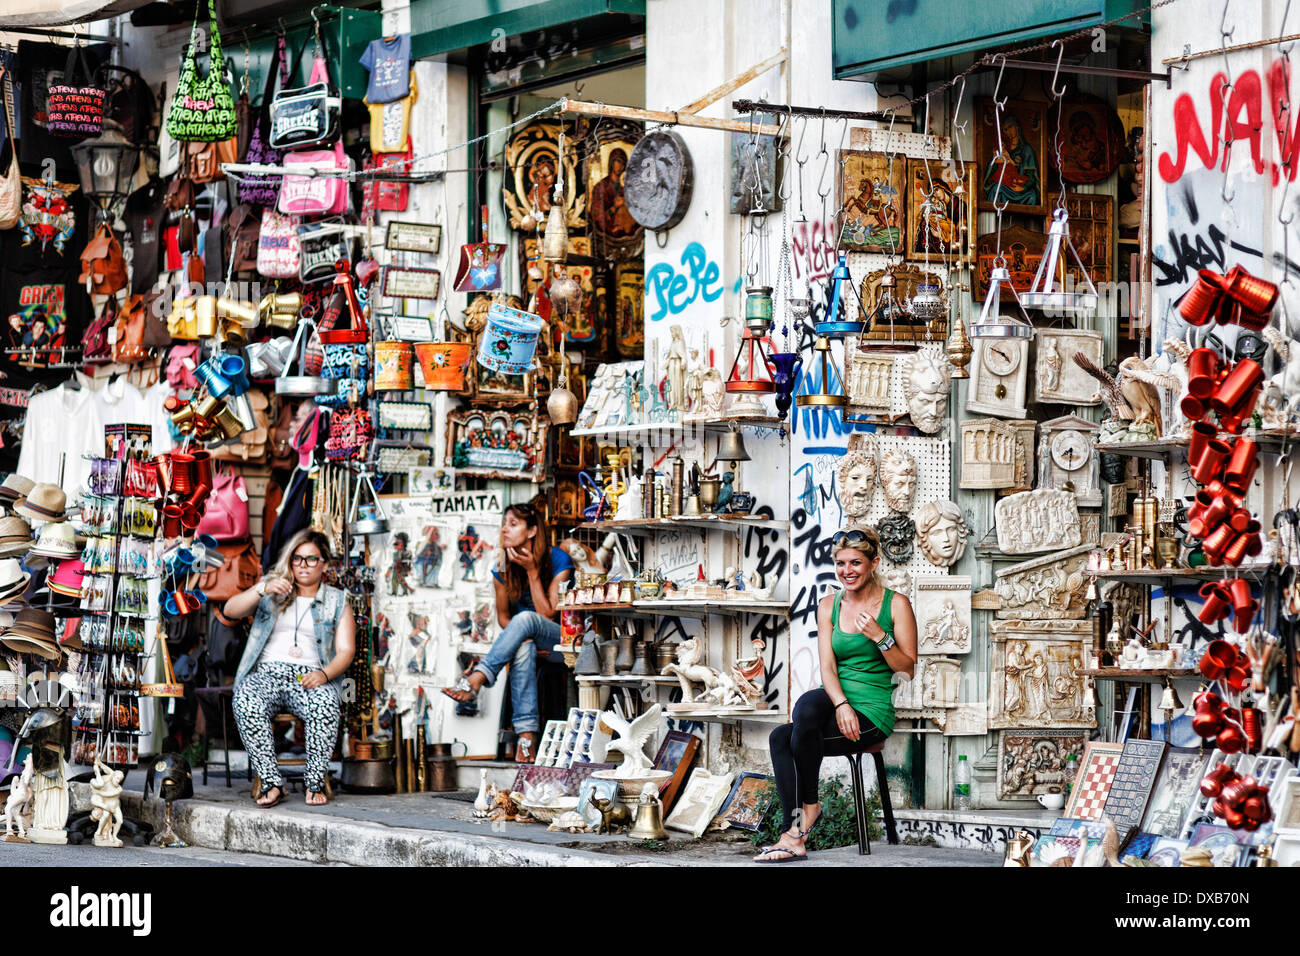 Tienda de souvenirs en las calles de Atenas, Grecia Foto de stock